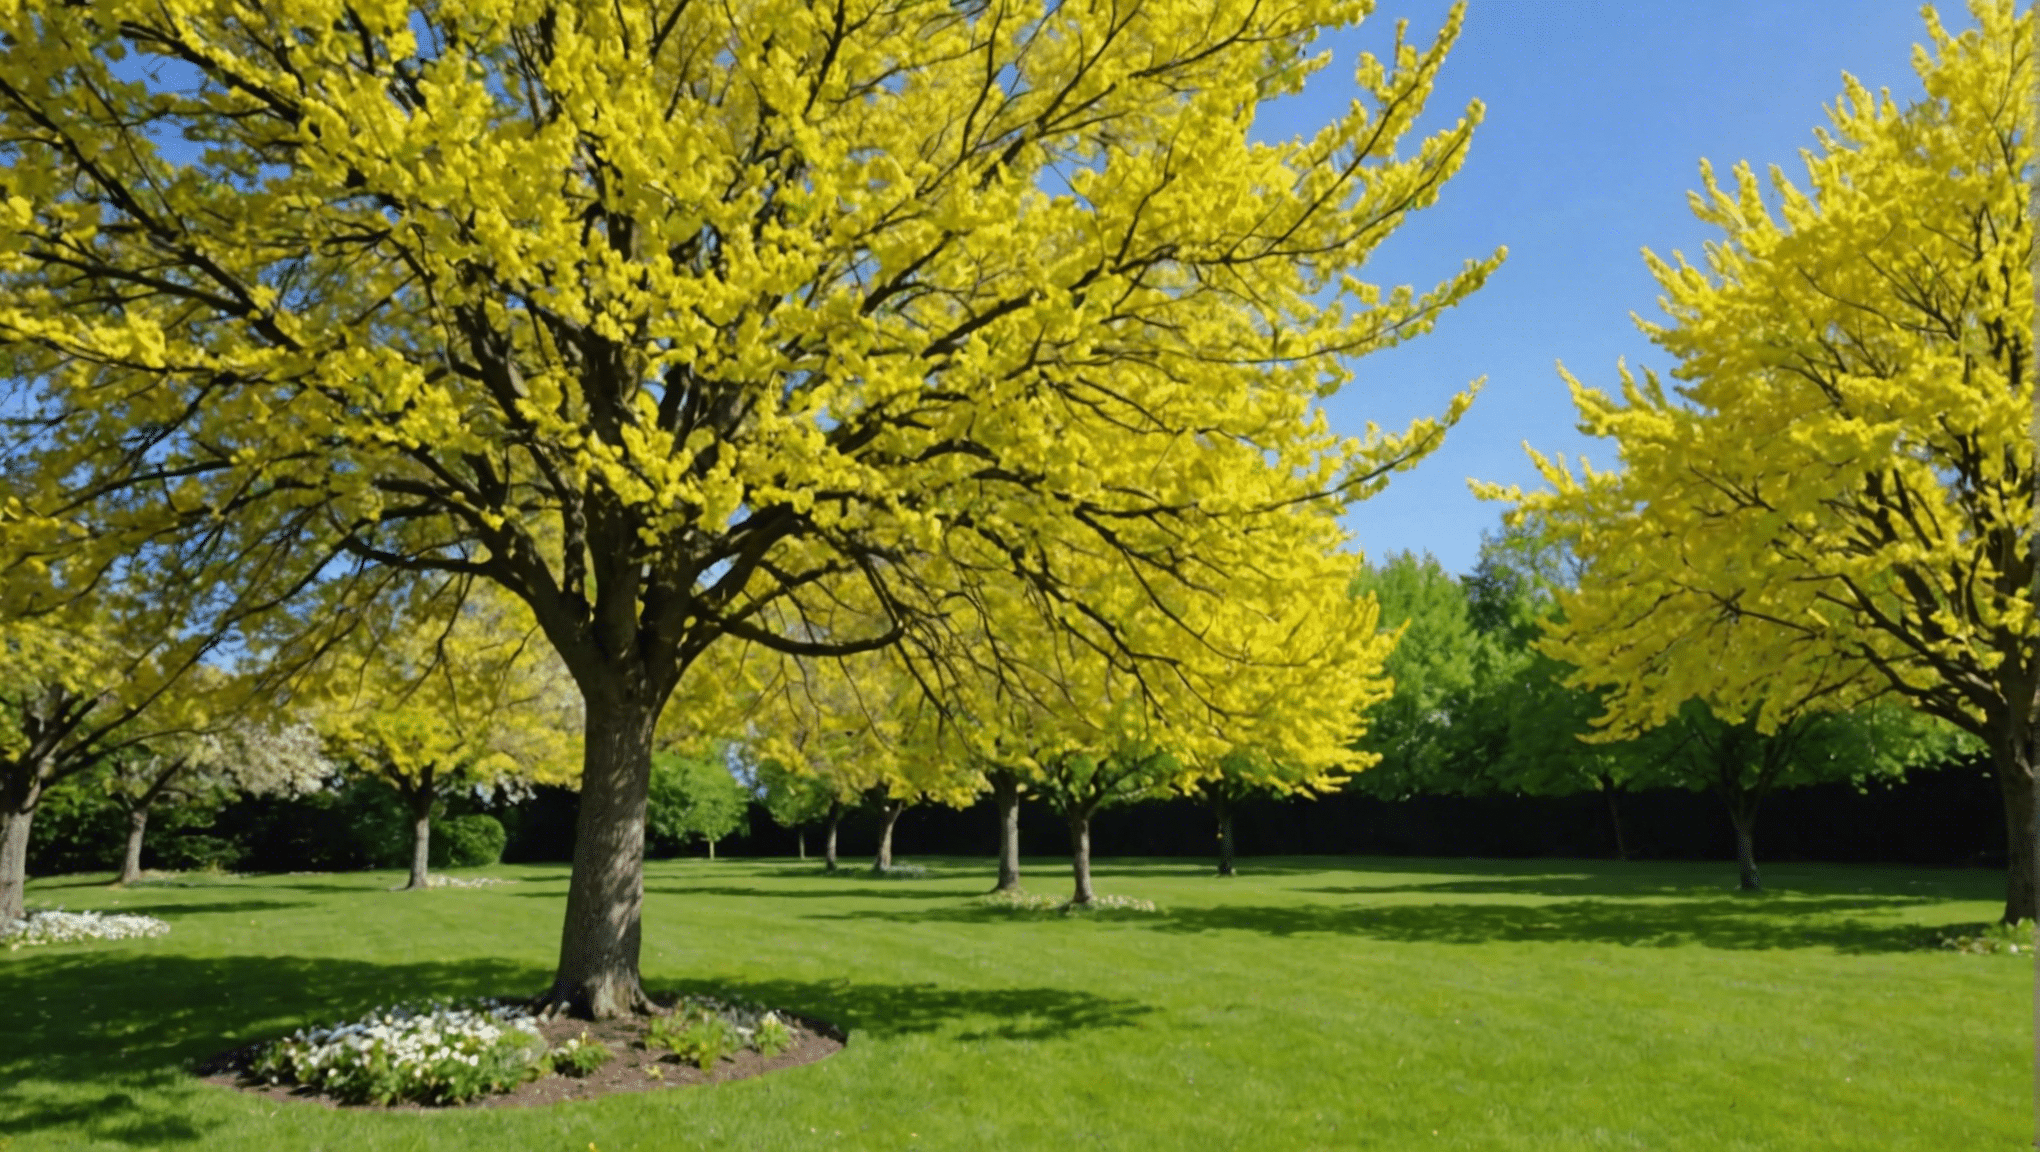 découvrez comment identifier et éliminer les arbres et fleurs responsables des allergies au pollen dans votre jardin pour un environnement plus sain.